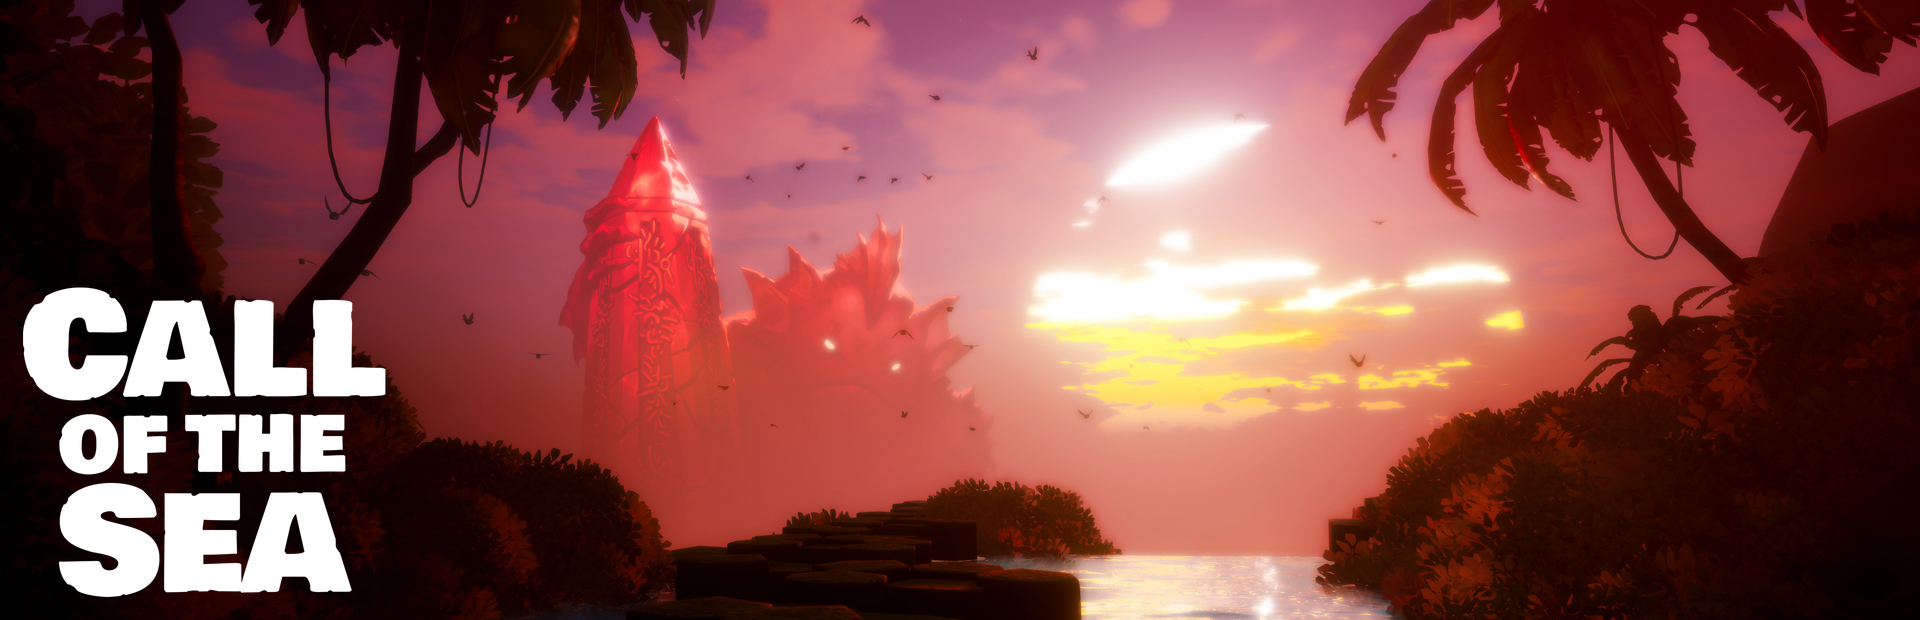 دانلود بازی Call of the Sea برای PC | گیمباتو